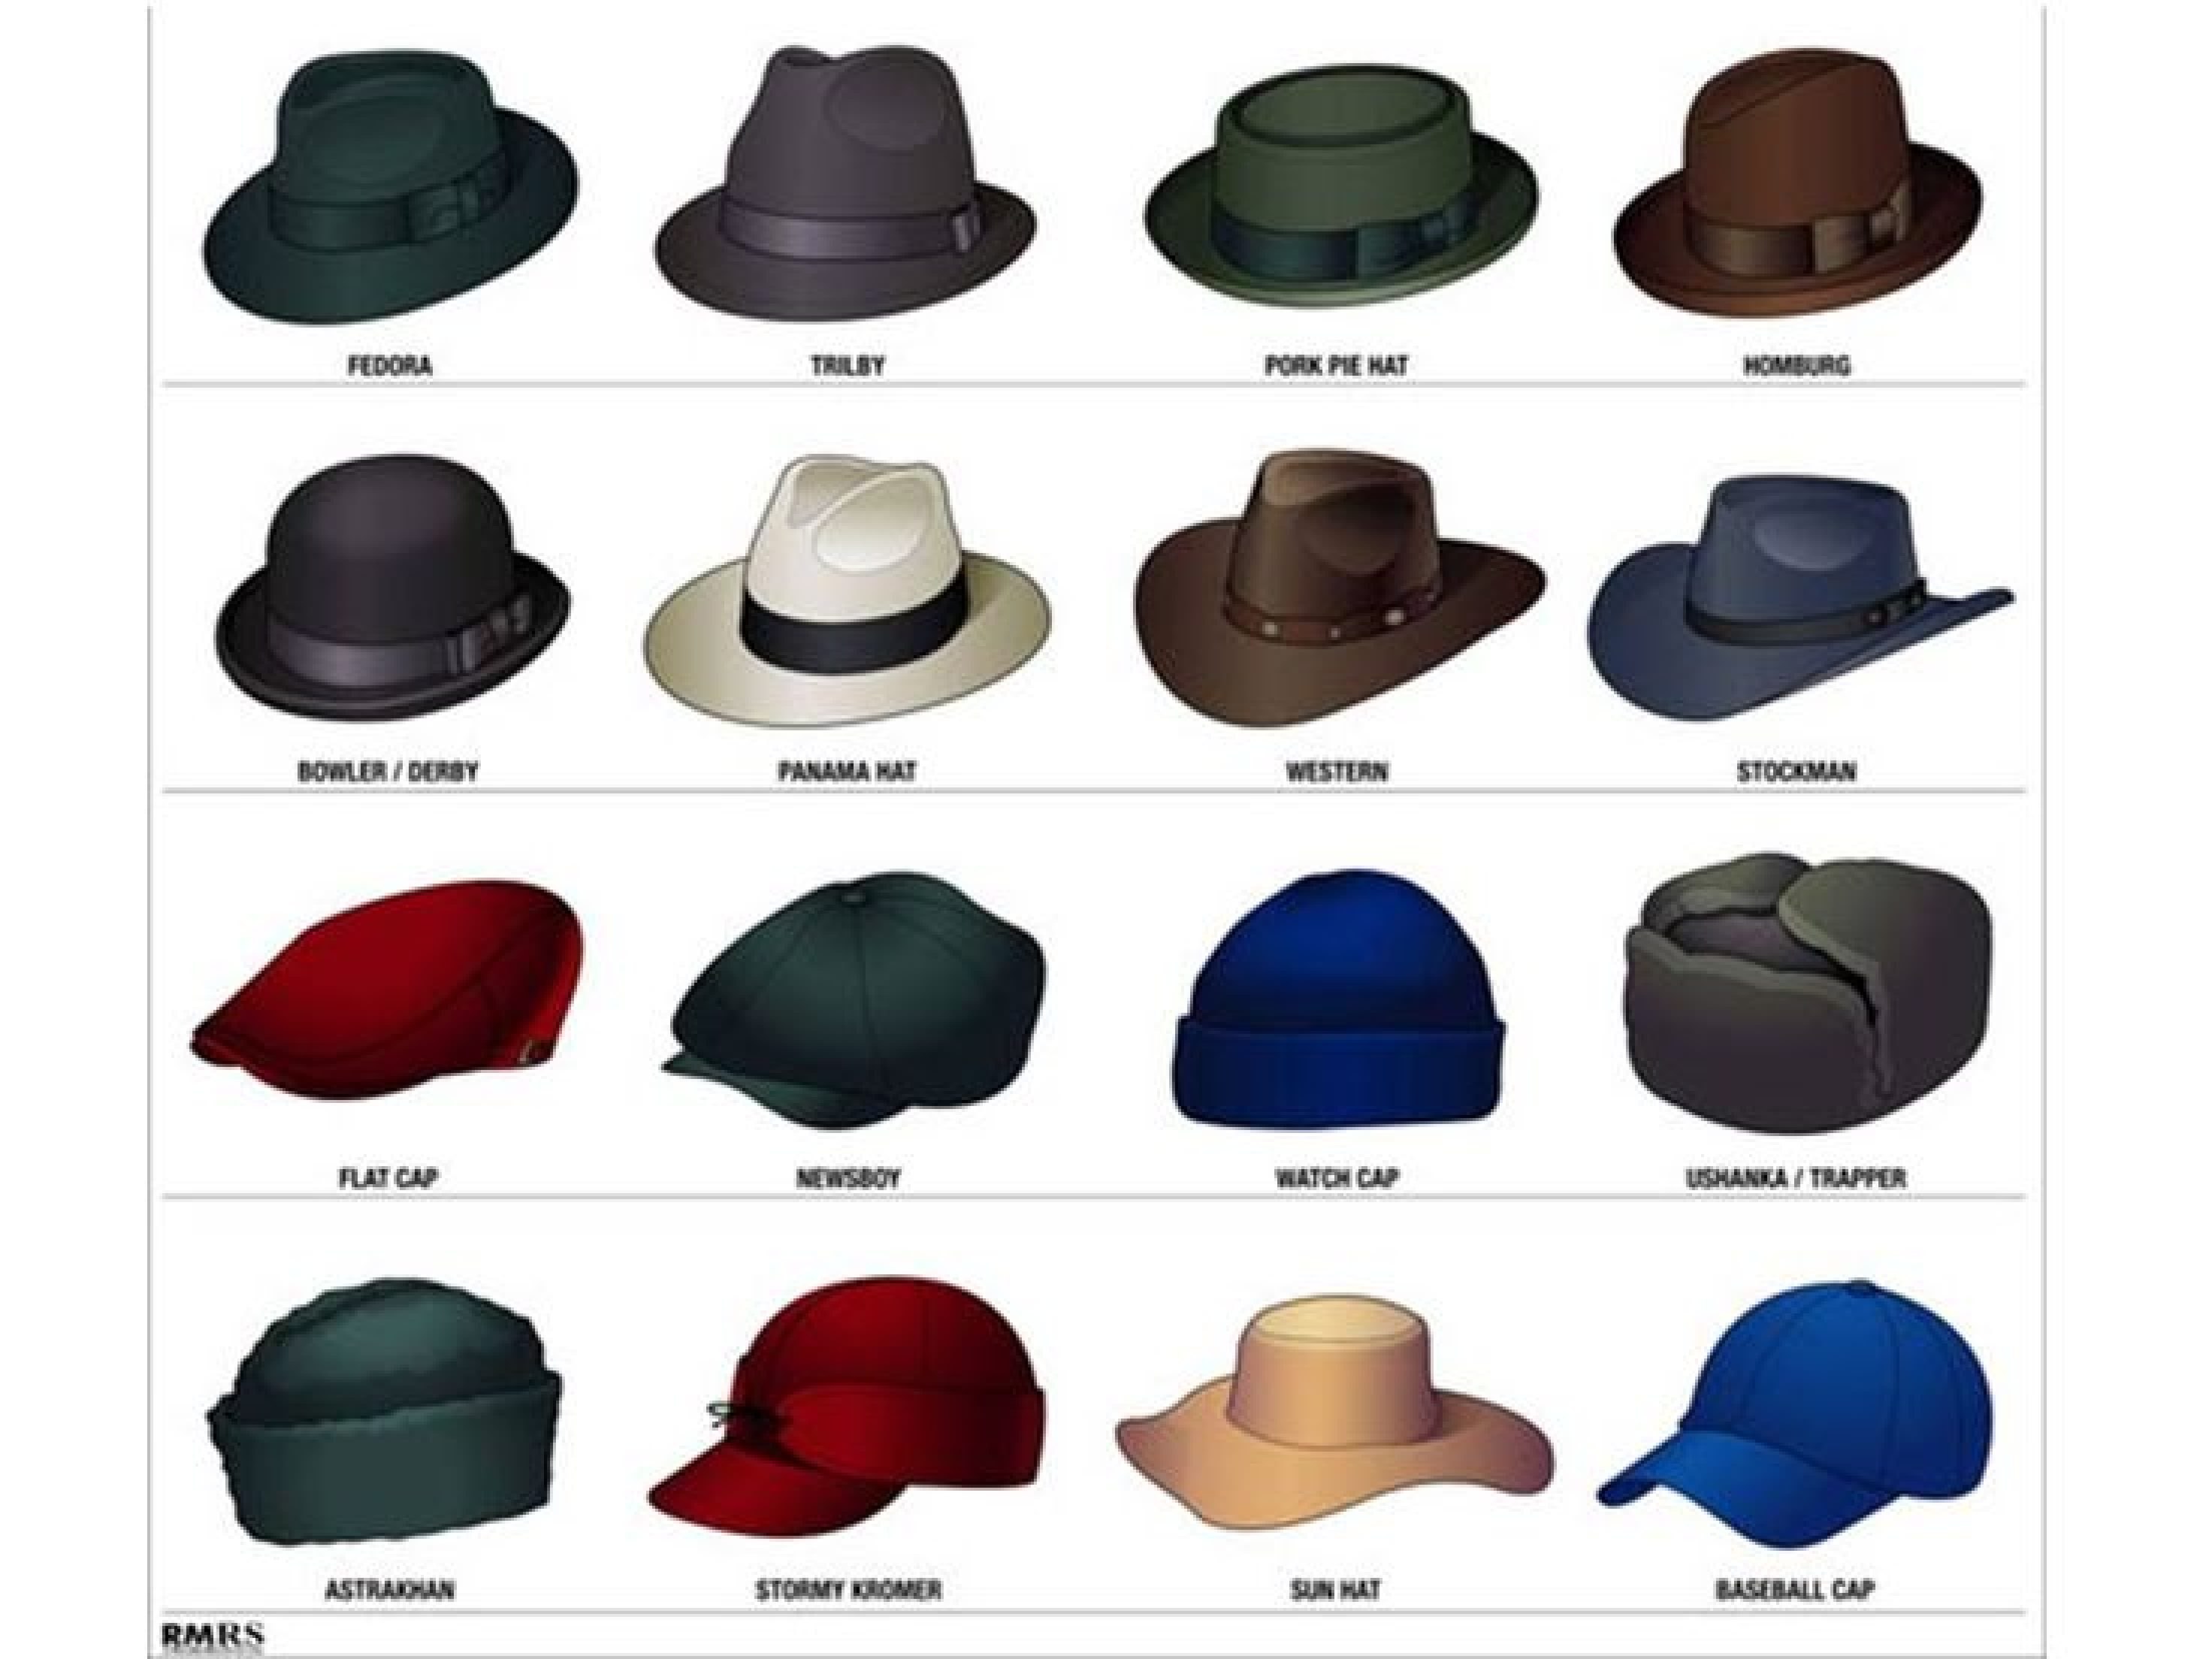 Hat mp3. Формы шляп женских. Фасоны шляп мужских. Шляпы мужские названия. Название форм шляп.